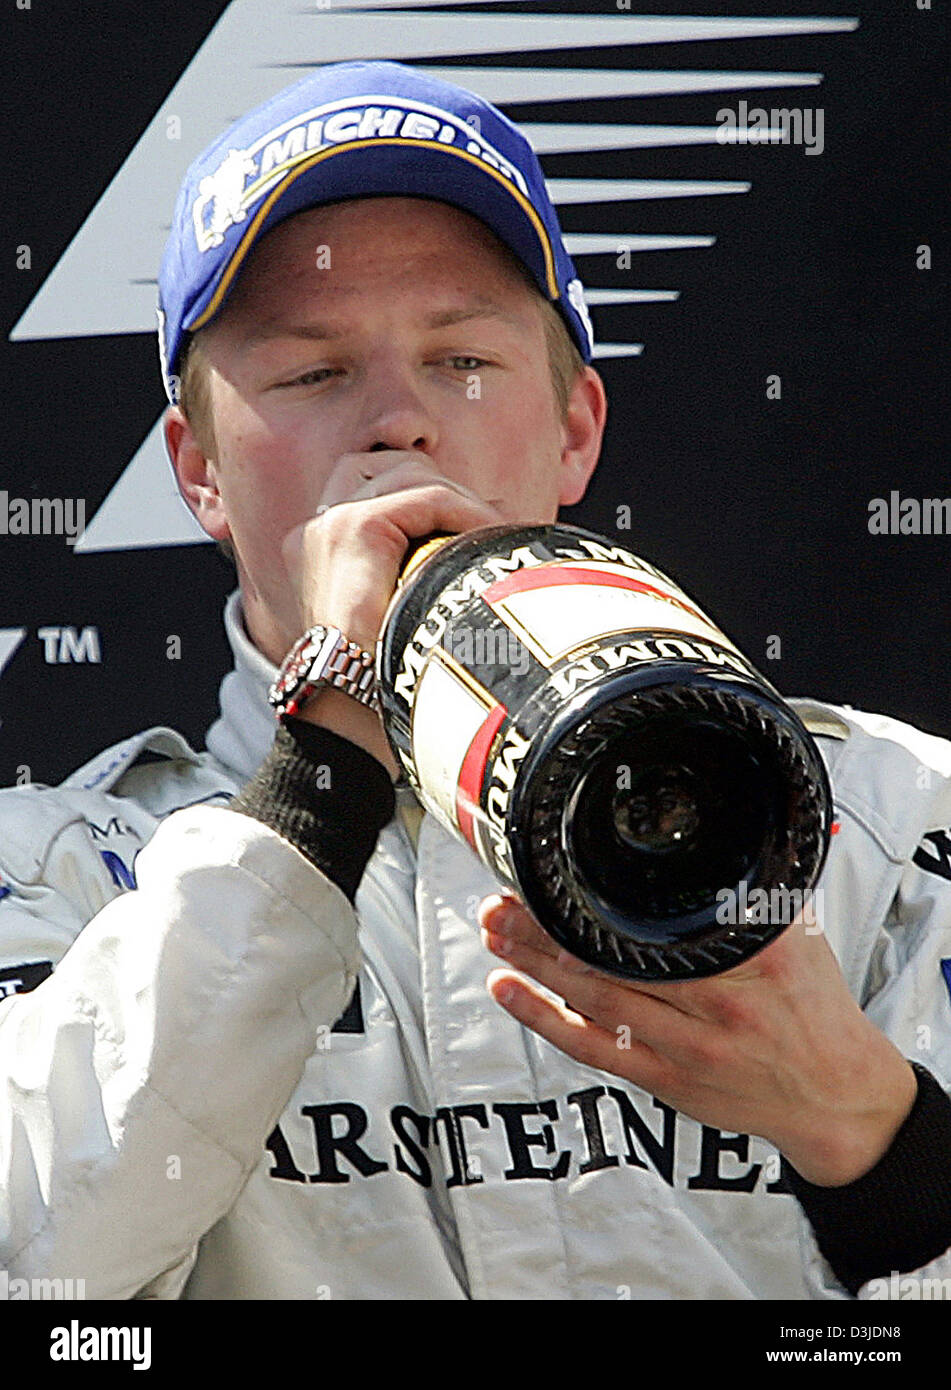 (Dpa) - Finlandese pilota di Formula Uno Kimi Raeikkoenen del team McLaren Mercedes bevande champagne dopo ha vinto il Gran Premio di Spagna presso il circuito di Formula Uno Circuito de Catalunya di Barcellona vicino a Montmelò, domenica 08 maggio 2005. Foto Stock